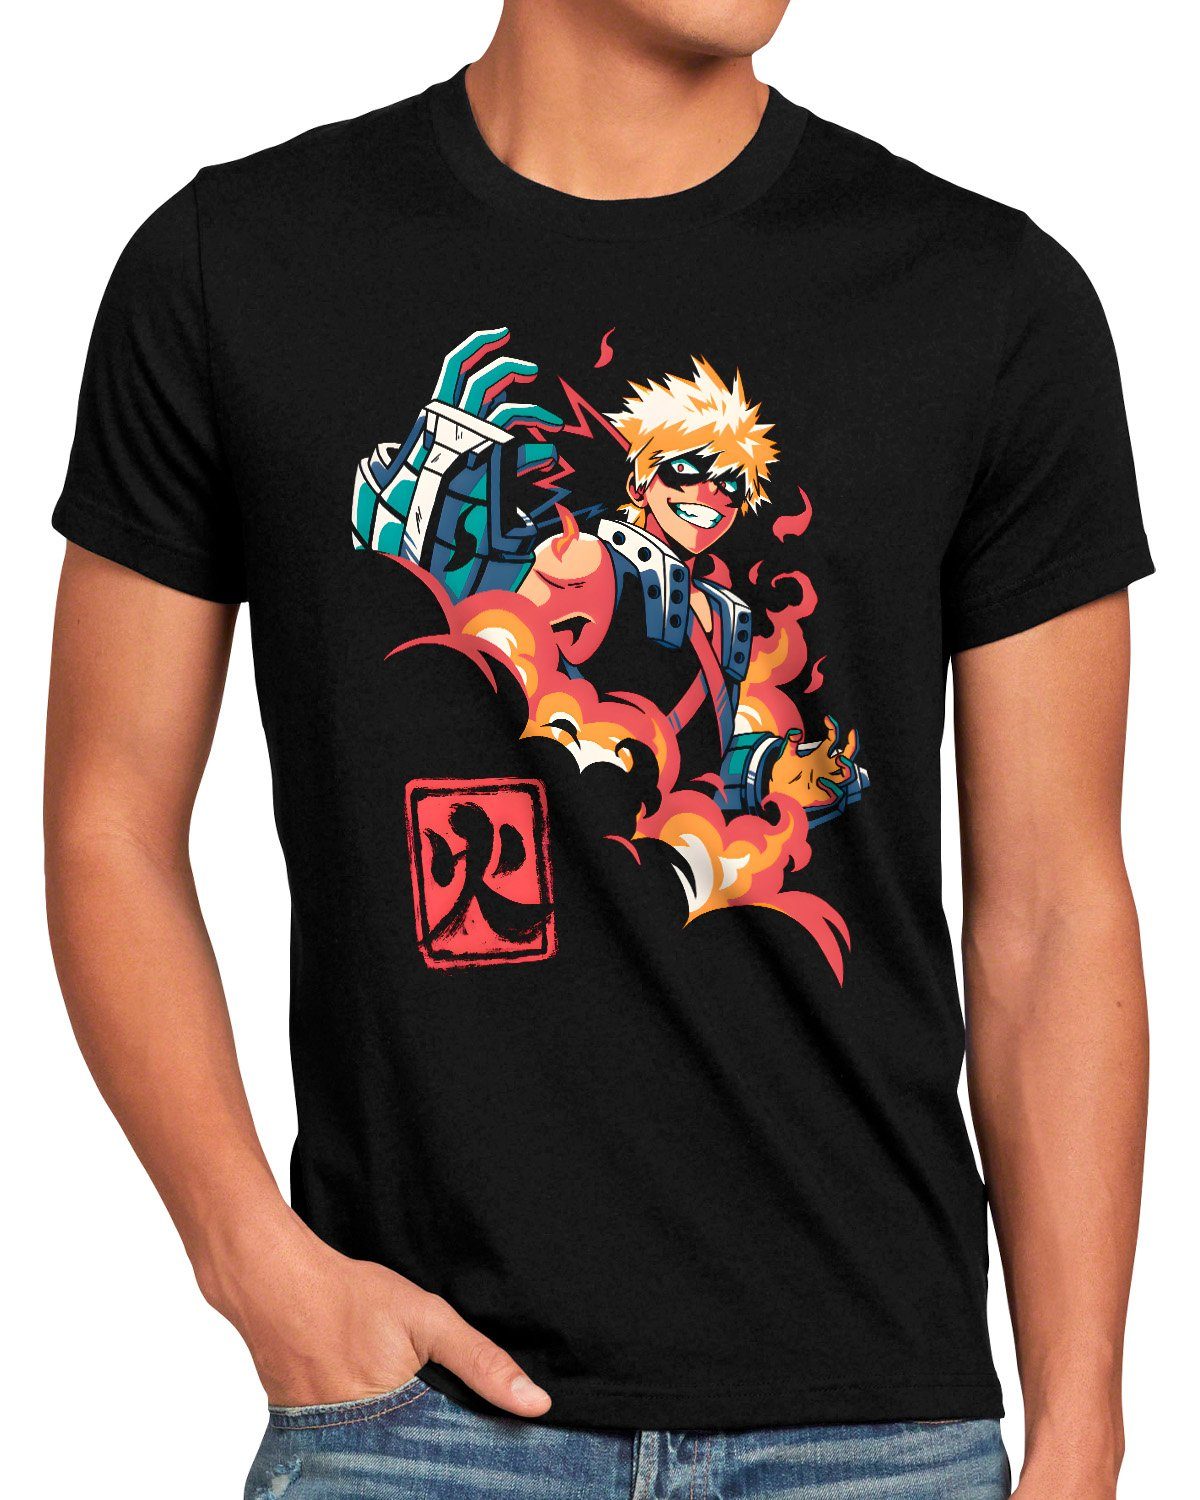 Boy cosplay hero Print-Shirt manga academia Herren my anime Explosion style3 T-Shirt